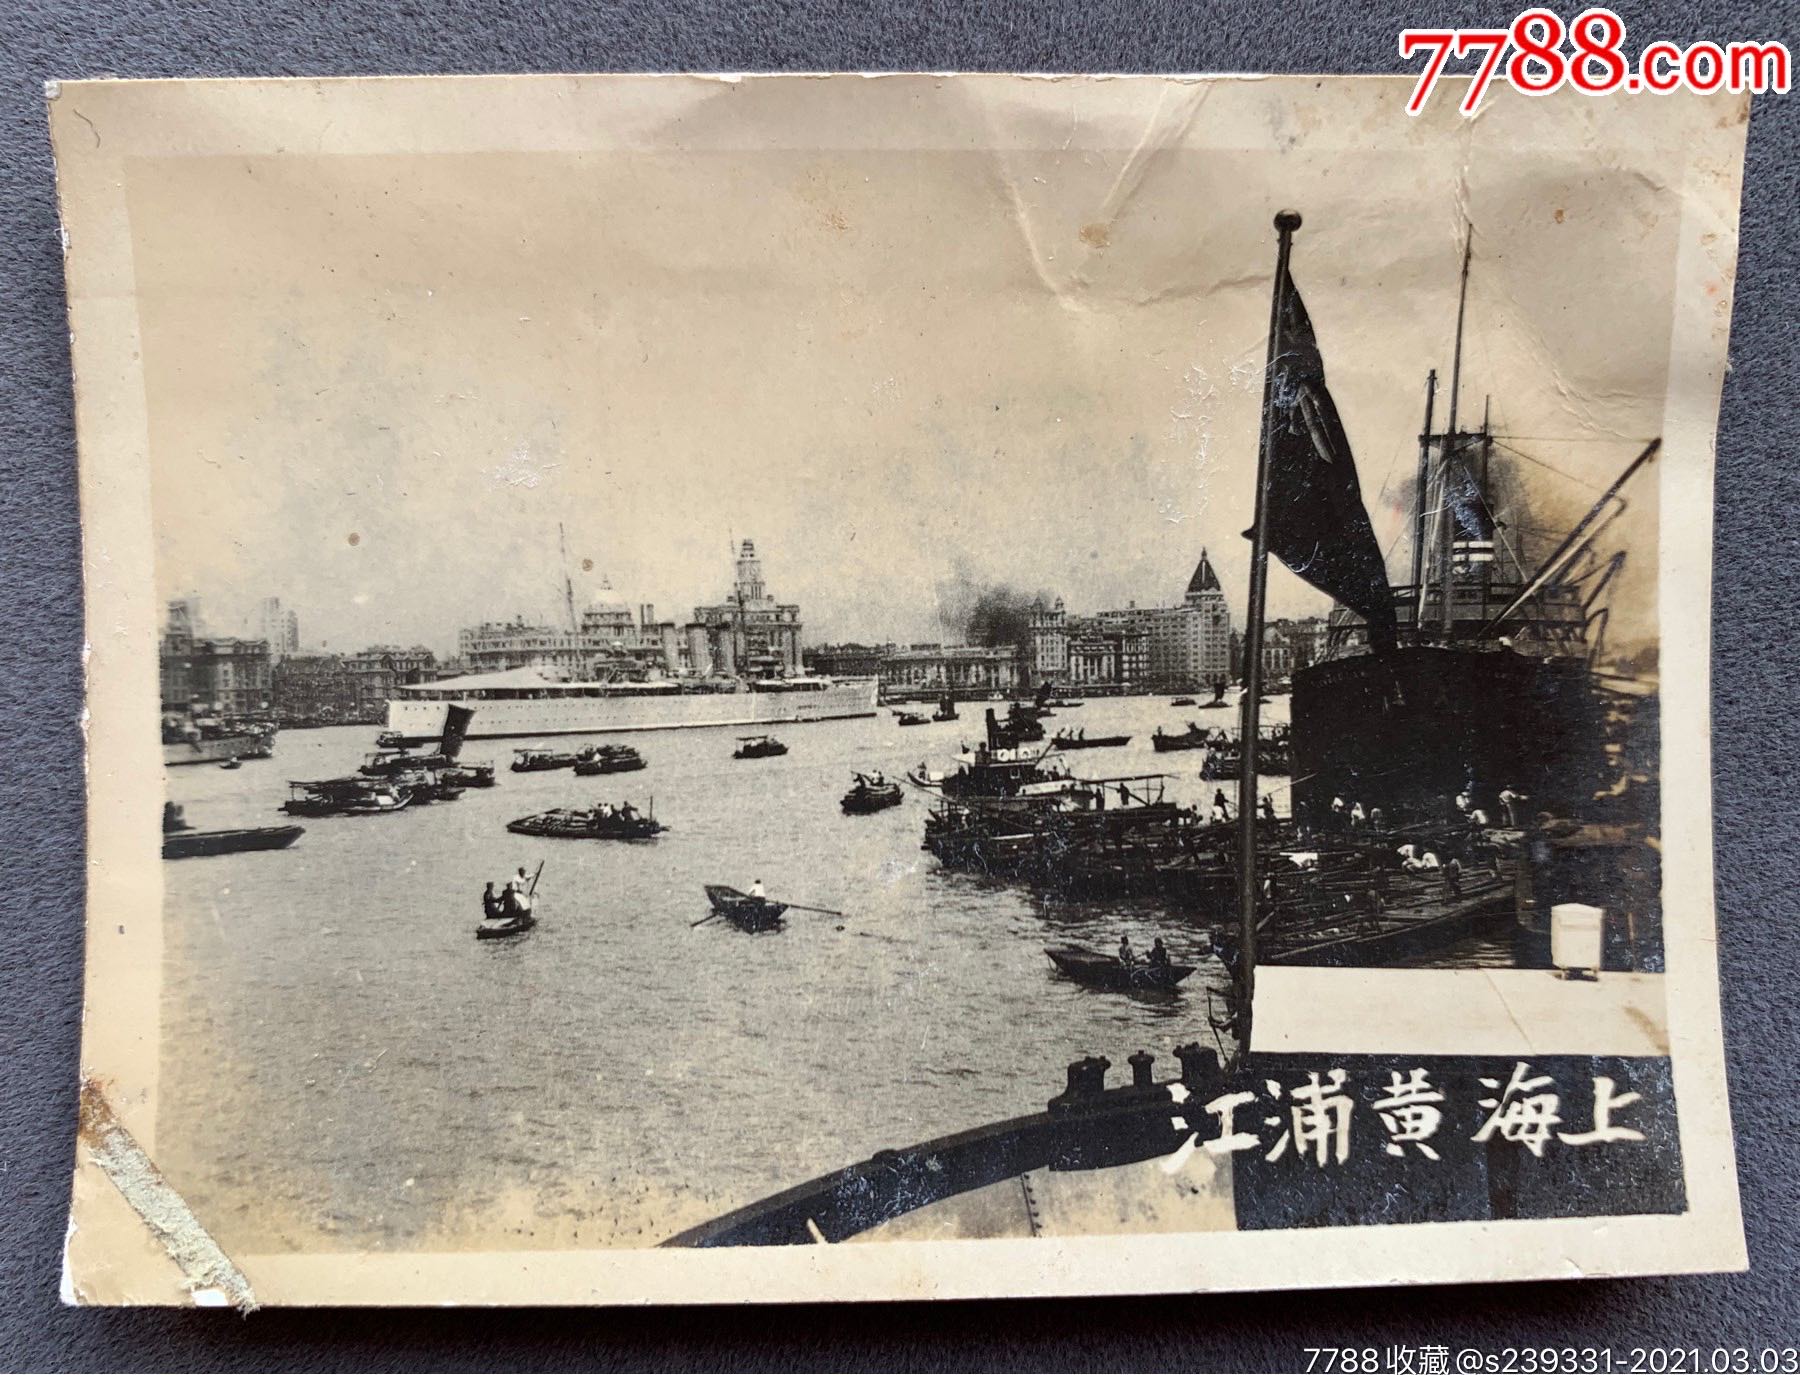 民国时期黄浦江英国军舰视角下之上海滩及黄浦江风景银盐老照片一枚